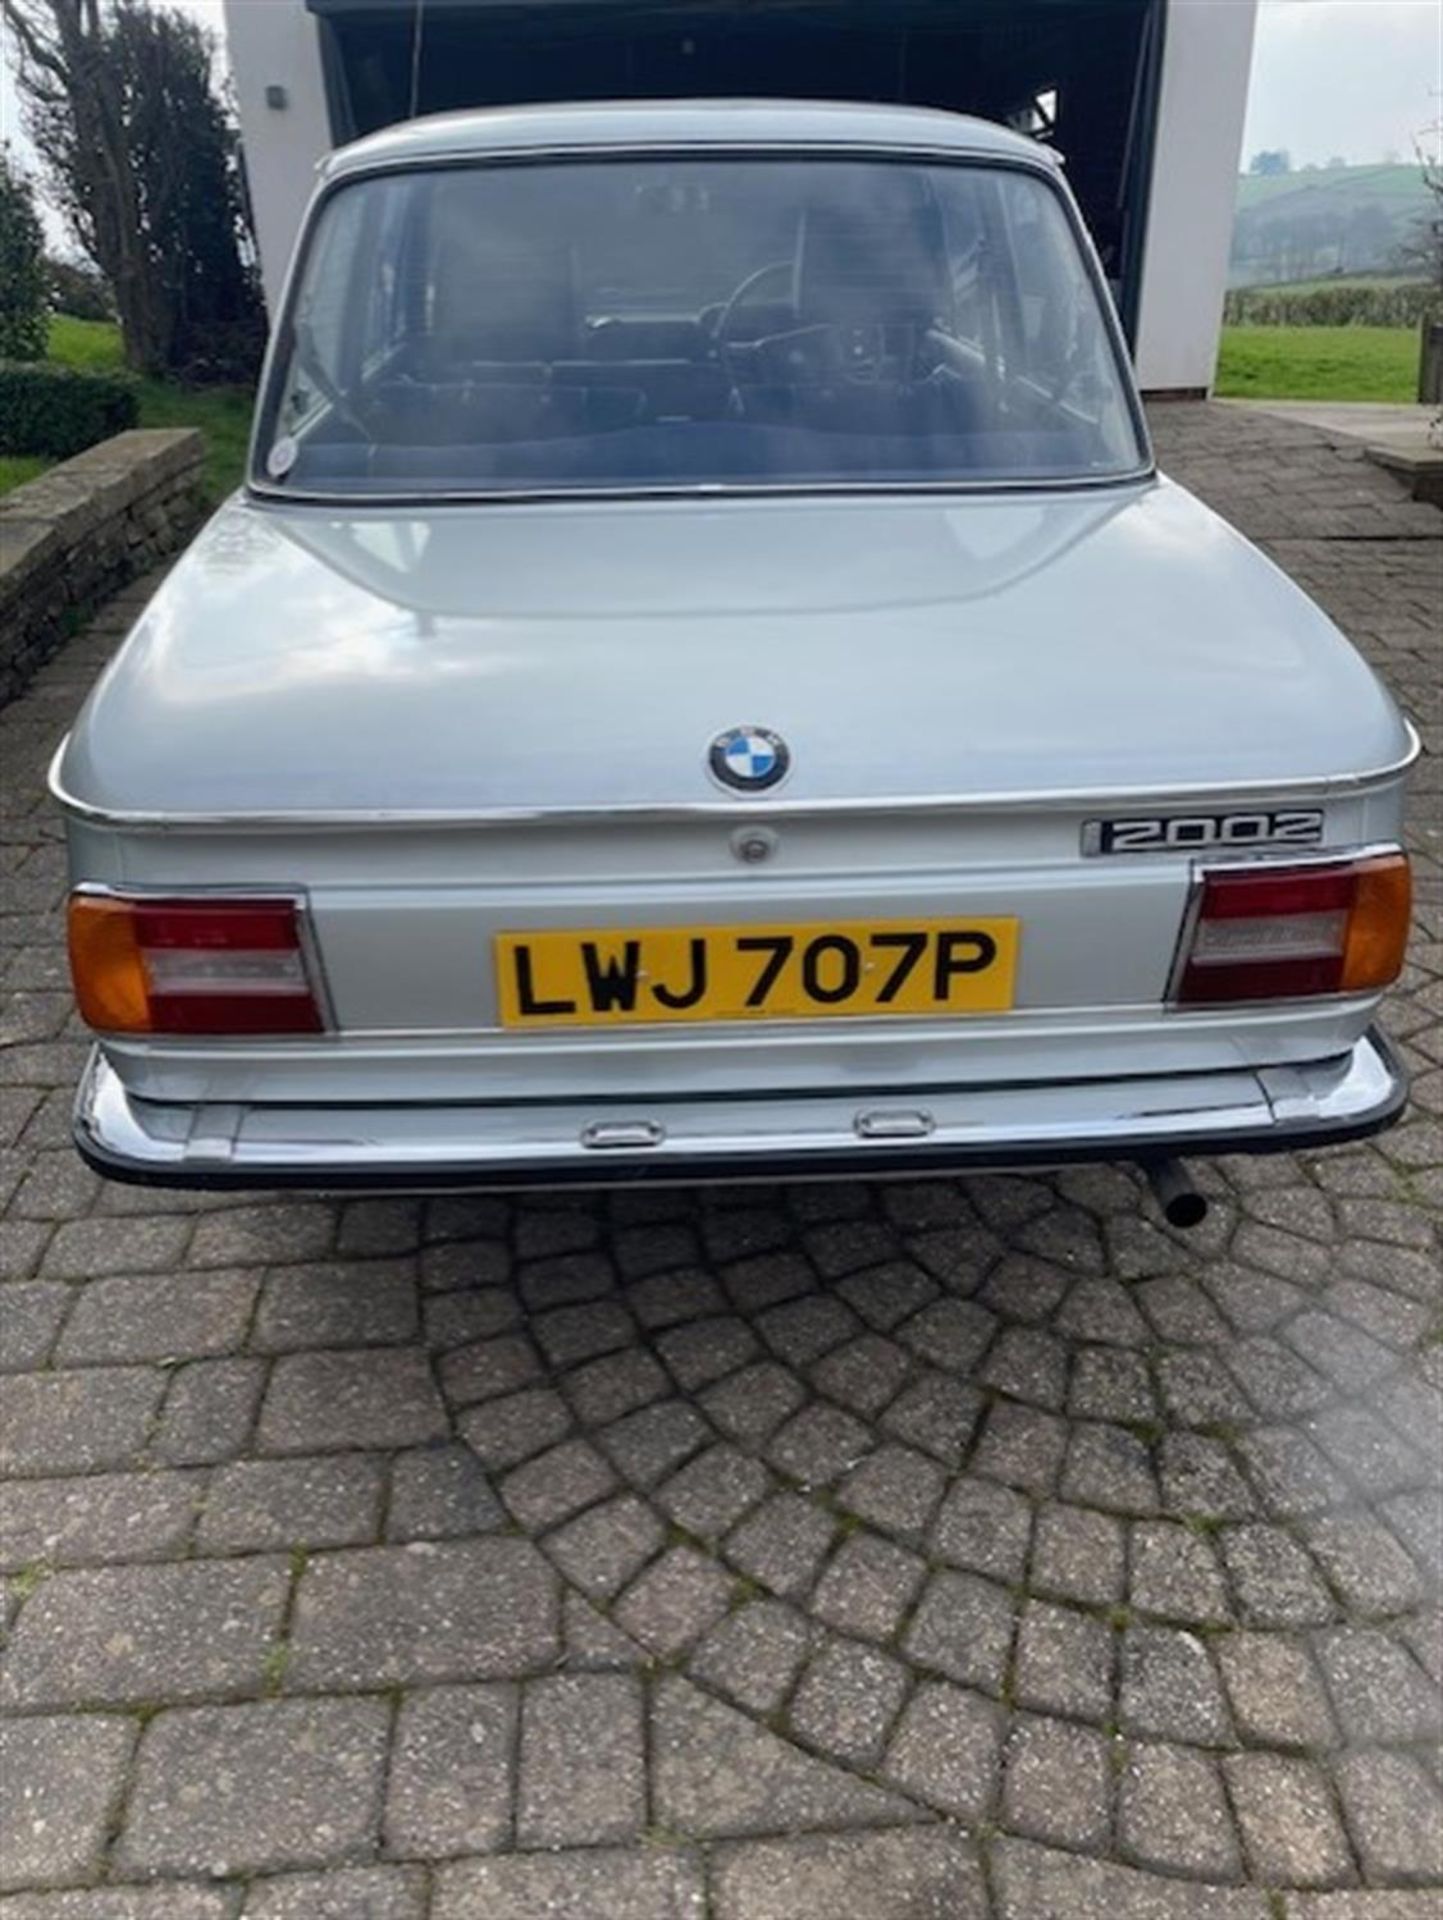 1976 BMW 2002 (E10/73) - Image 6 of 10